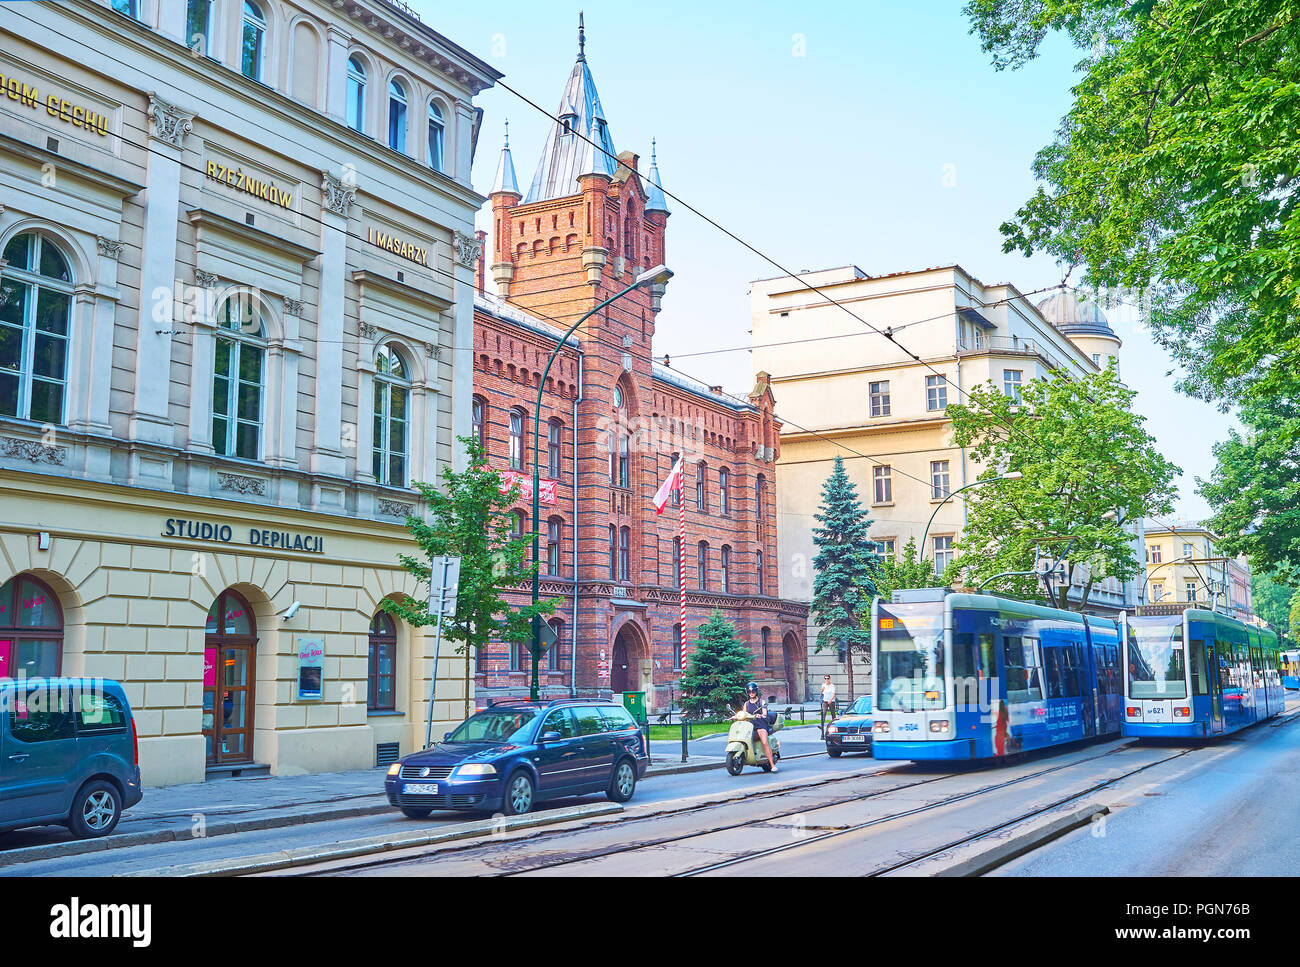 Cracovia in Polonia - Giugno 11, 2018: La scena urbana con tram blu e la vecchia stazione dei vigili del fuoco di sfondo, il 11 giugno a Cracovia. Foto Stock